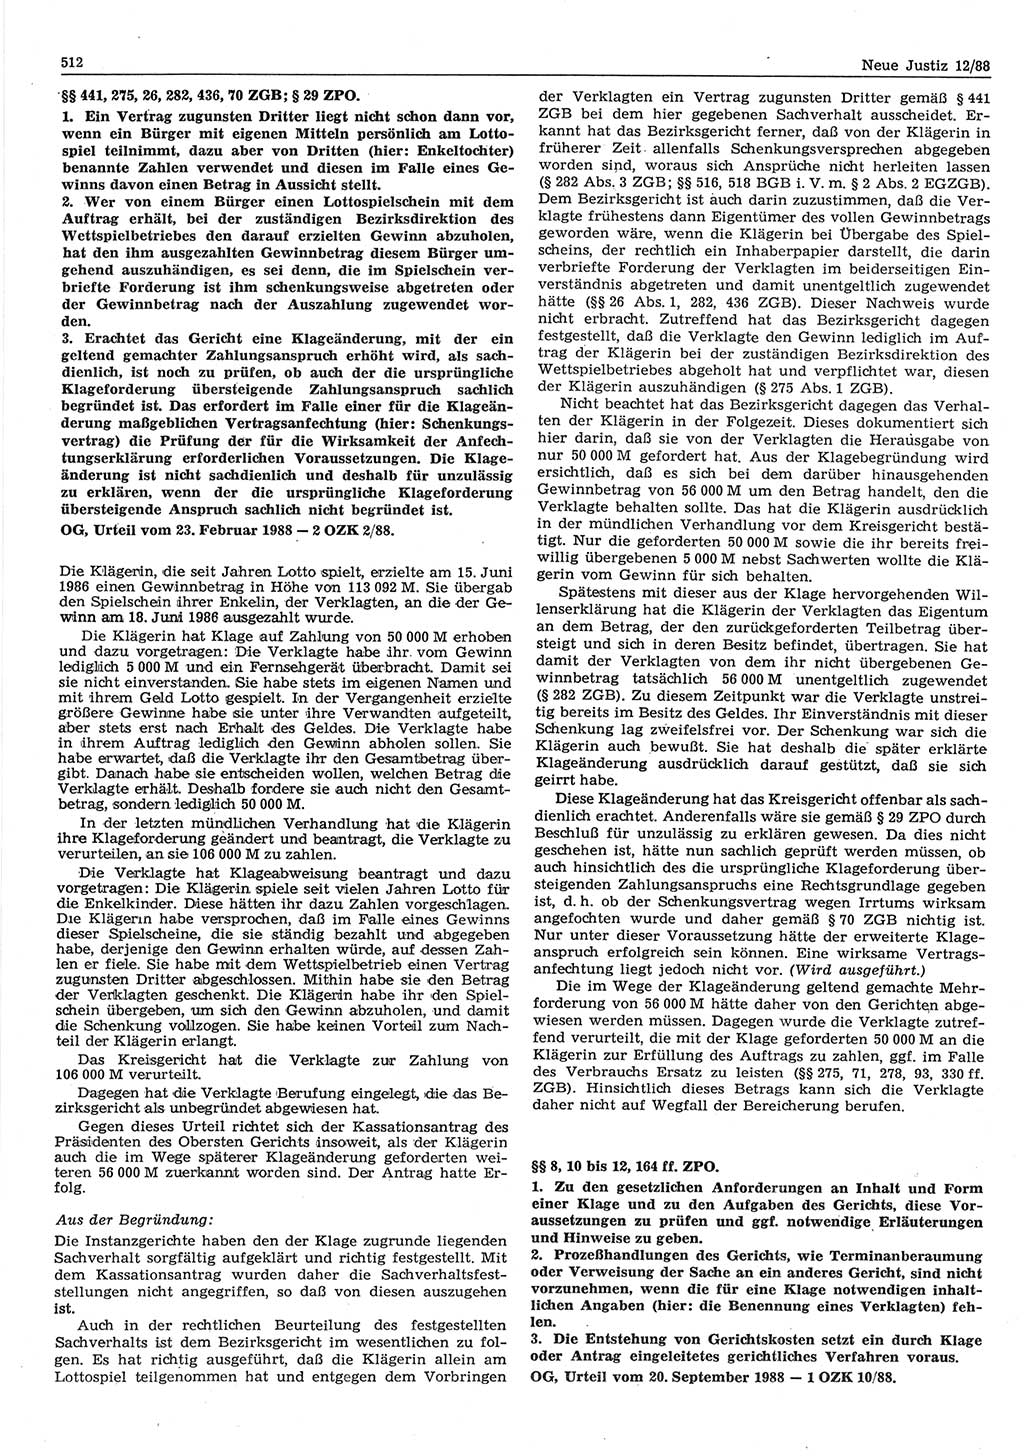 Neue Justiz (NJ), Zeitschrift für sozialistisches Recht und Gesetzlichkeit [Deutsche Demokratische Republik (DDR)], 42. Jahrgang 1988, Seite 512 (NJ DDR 1988, S. 512)